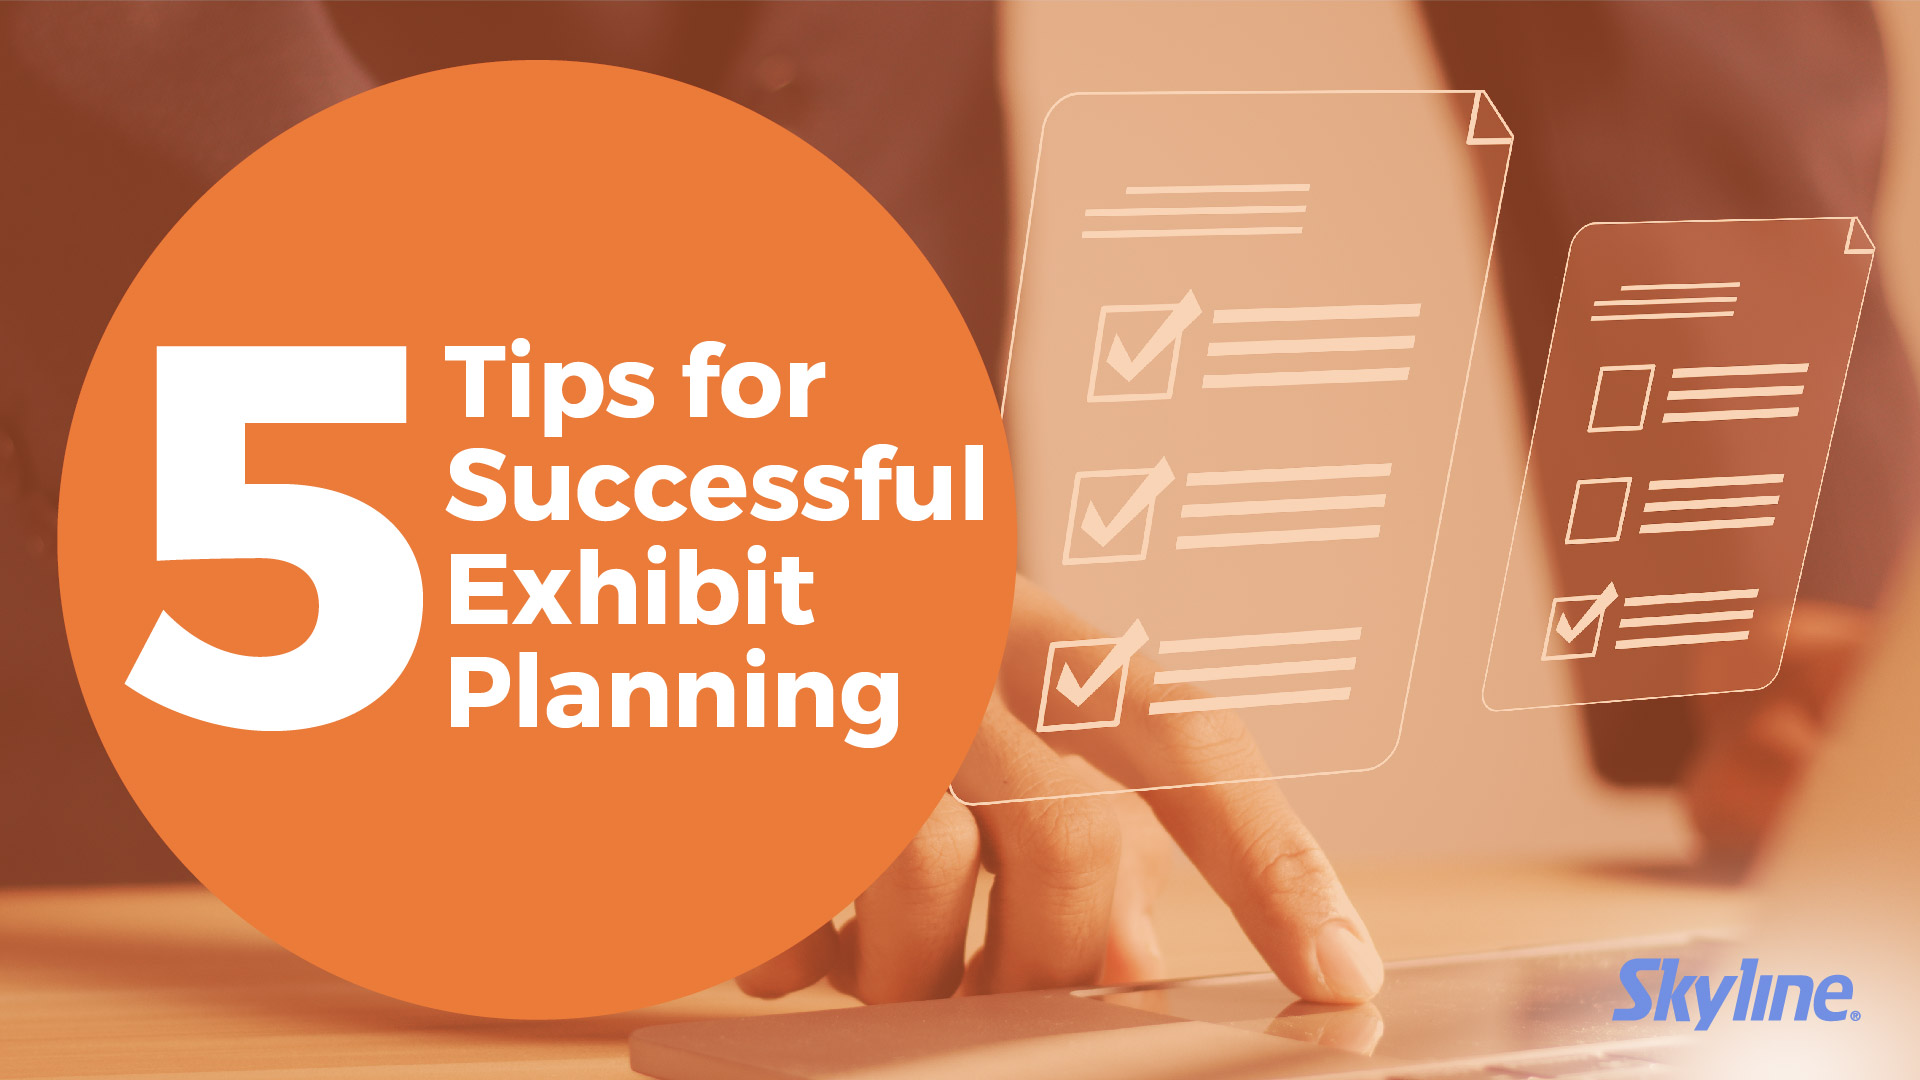 Successful Exhibit Planning branding tips